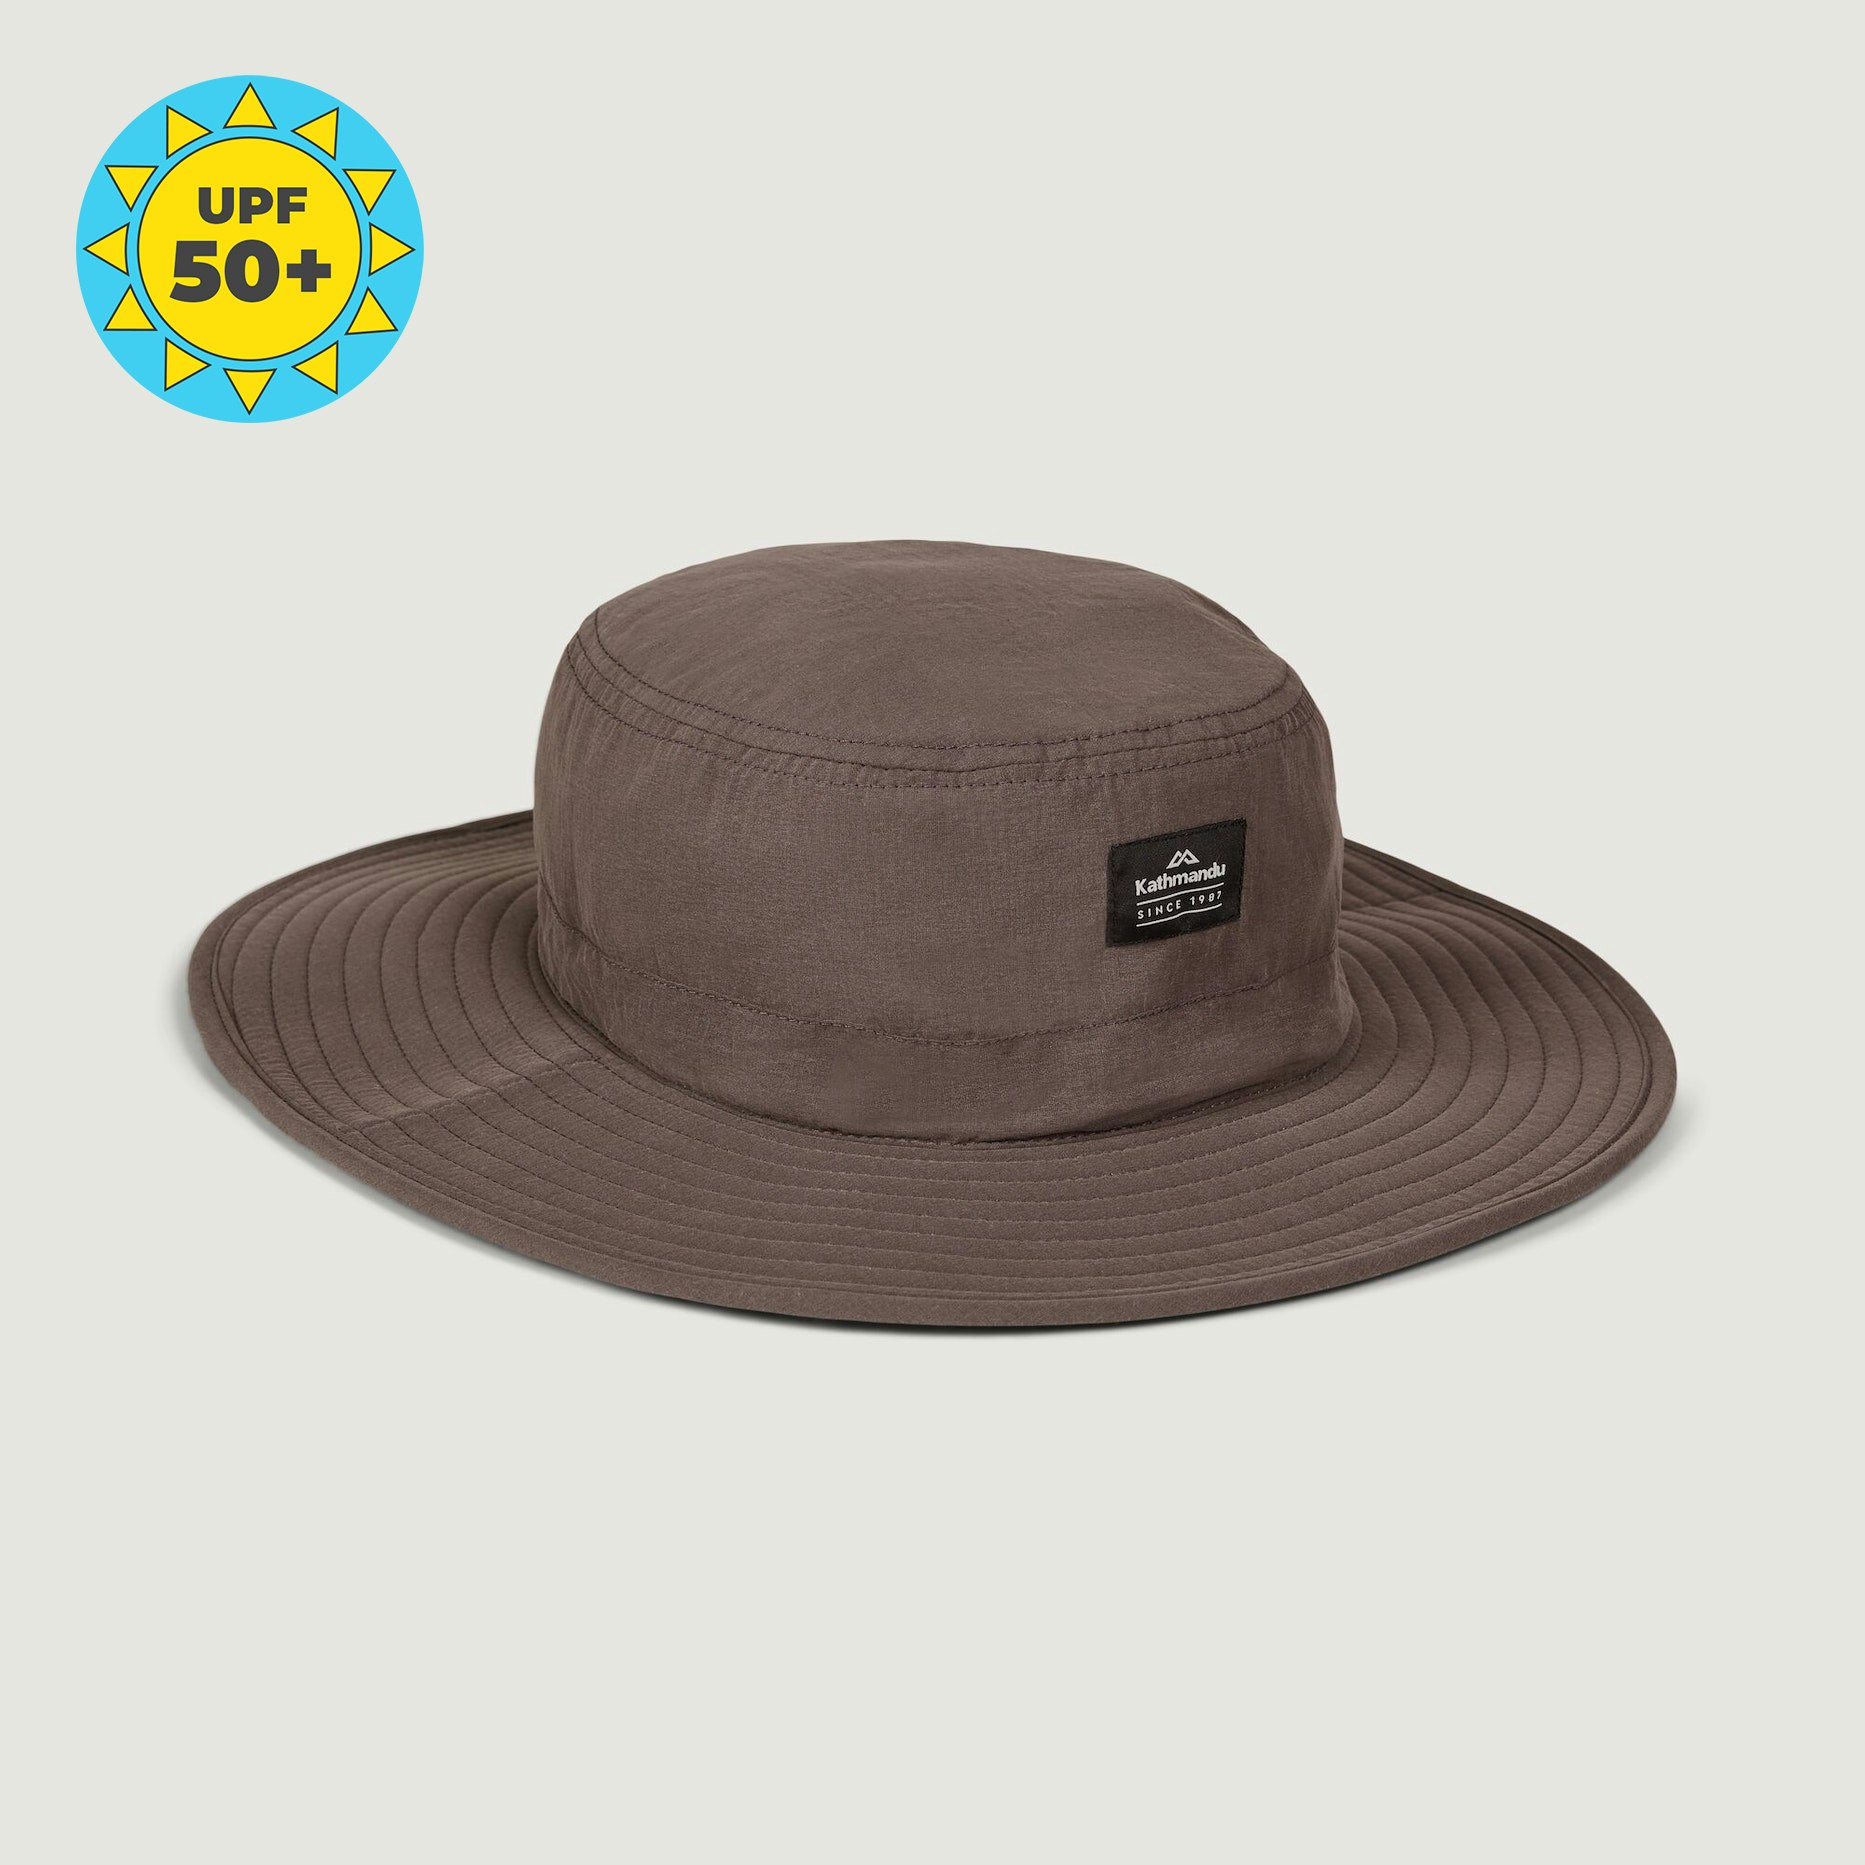 Kathmandu Unisex EVRY-Day Upf50+ Wide Brim Hat in Dark Quartz